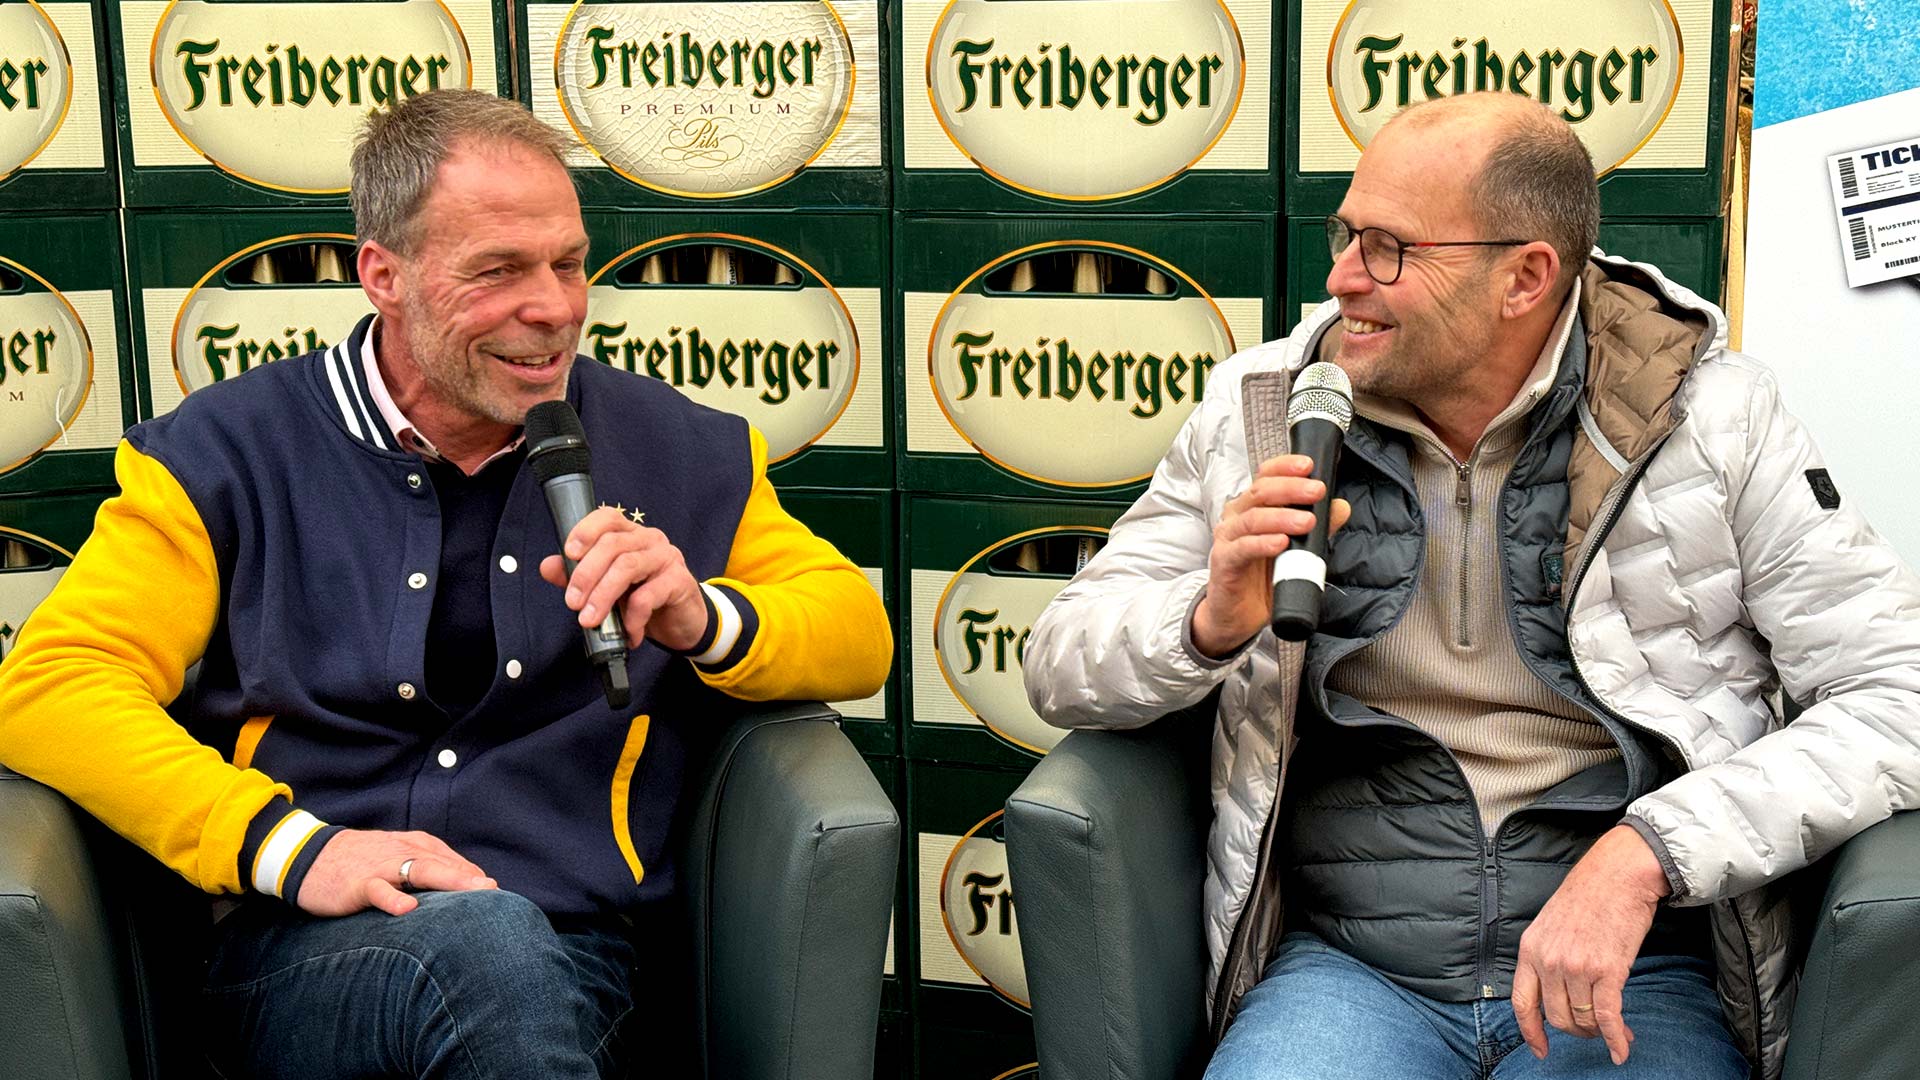 Füchse-Pressesprecher Frank Busdzuhn und Freiberger-Marketingleiter Frank Rehagel im Gespräch